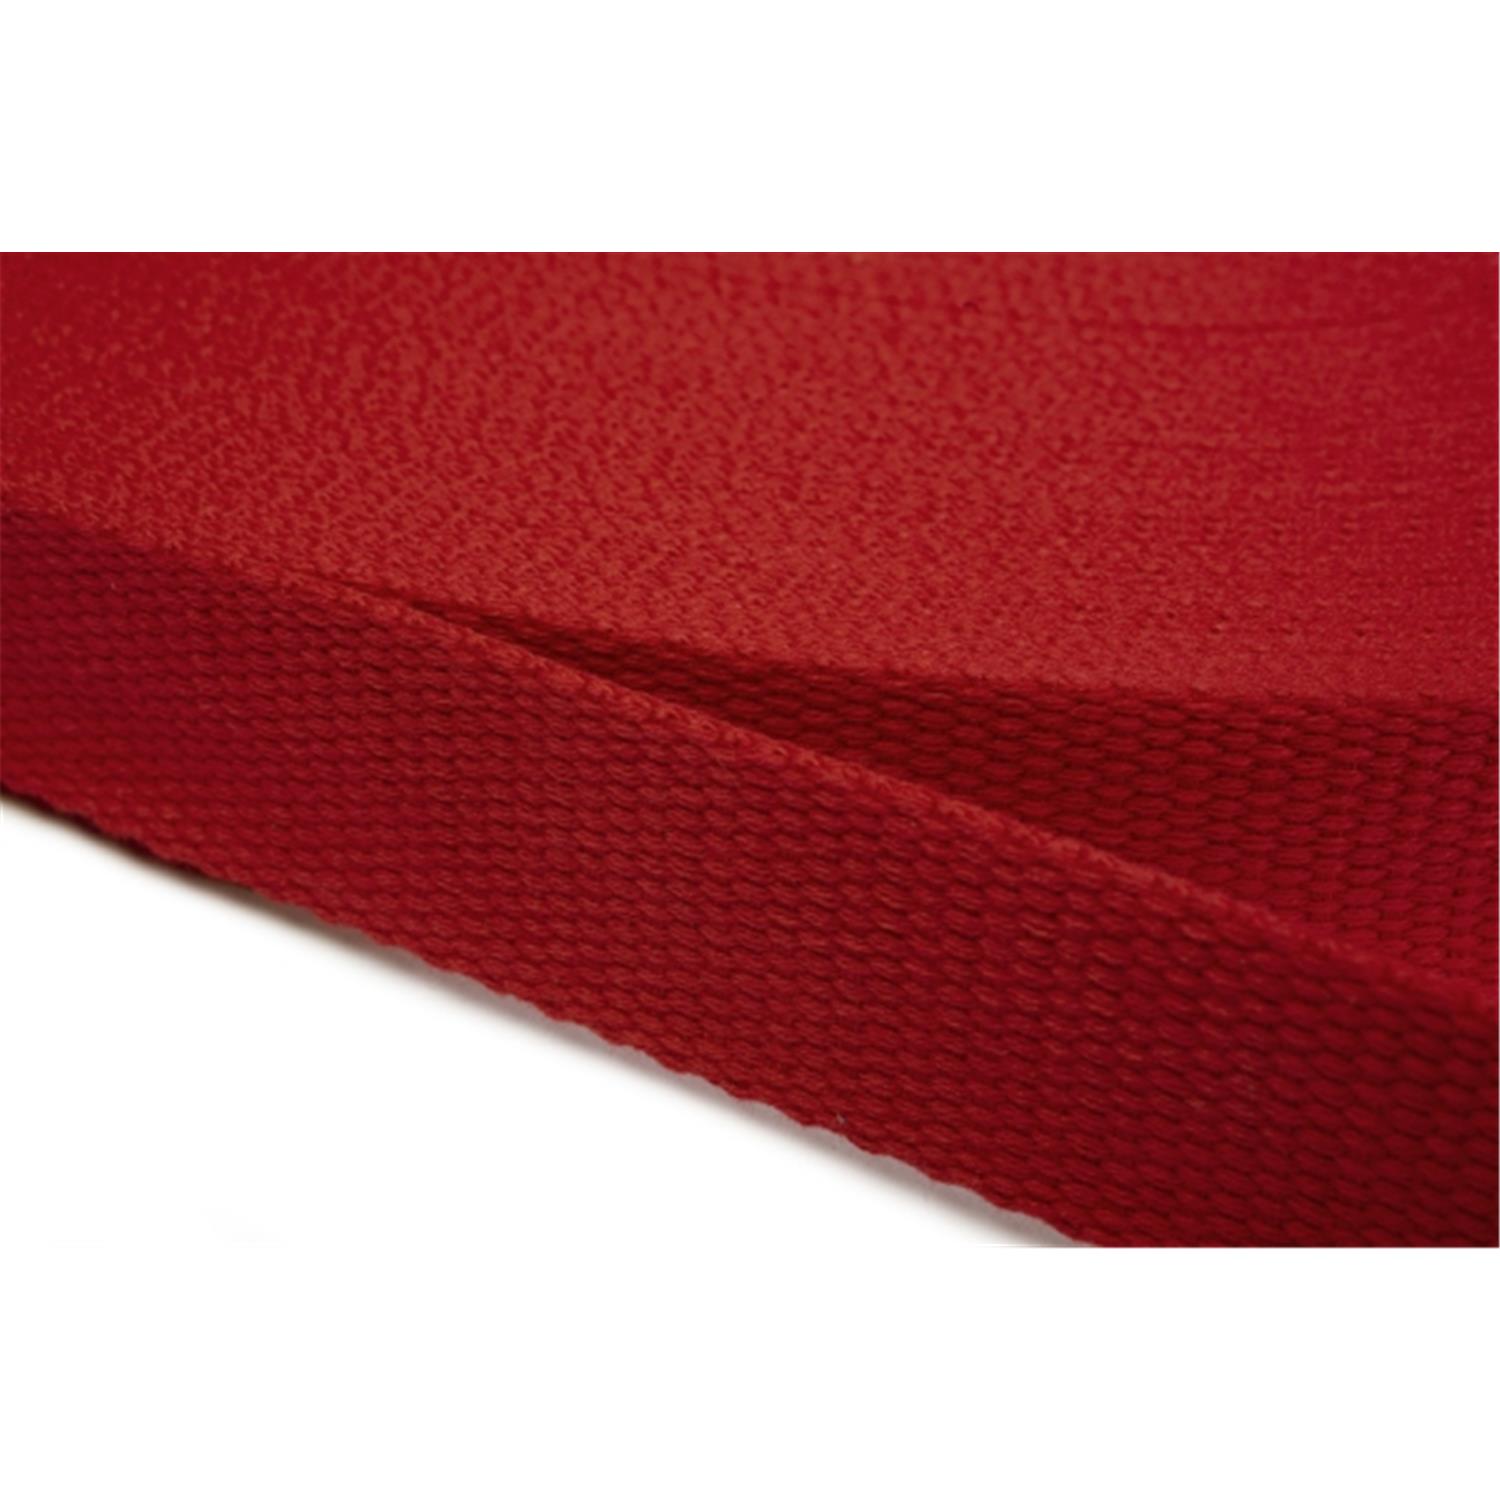 Gurtband aus Baumwolle 10mm in 20 Farben 10 - rot 12 Meter